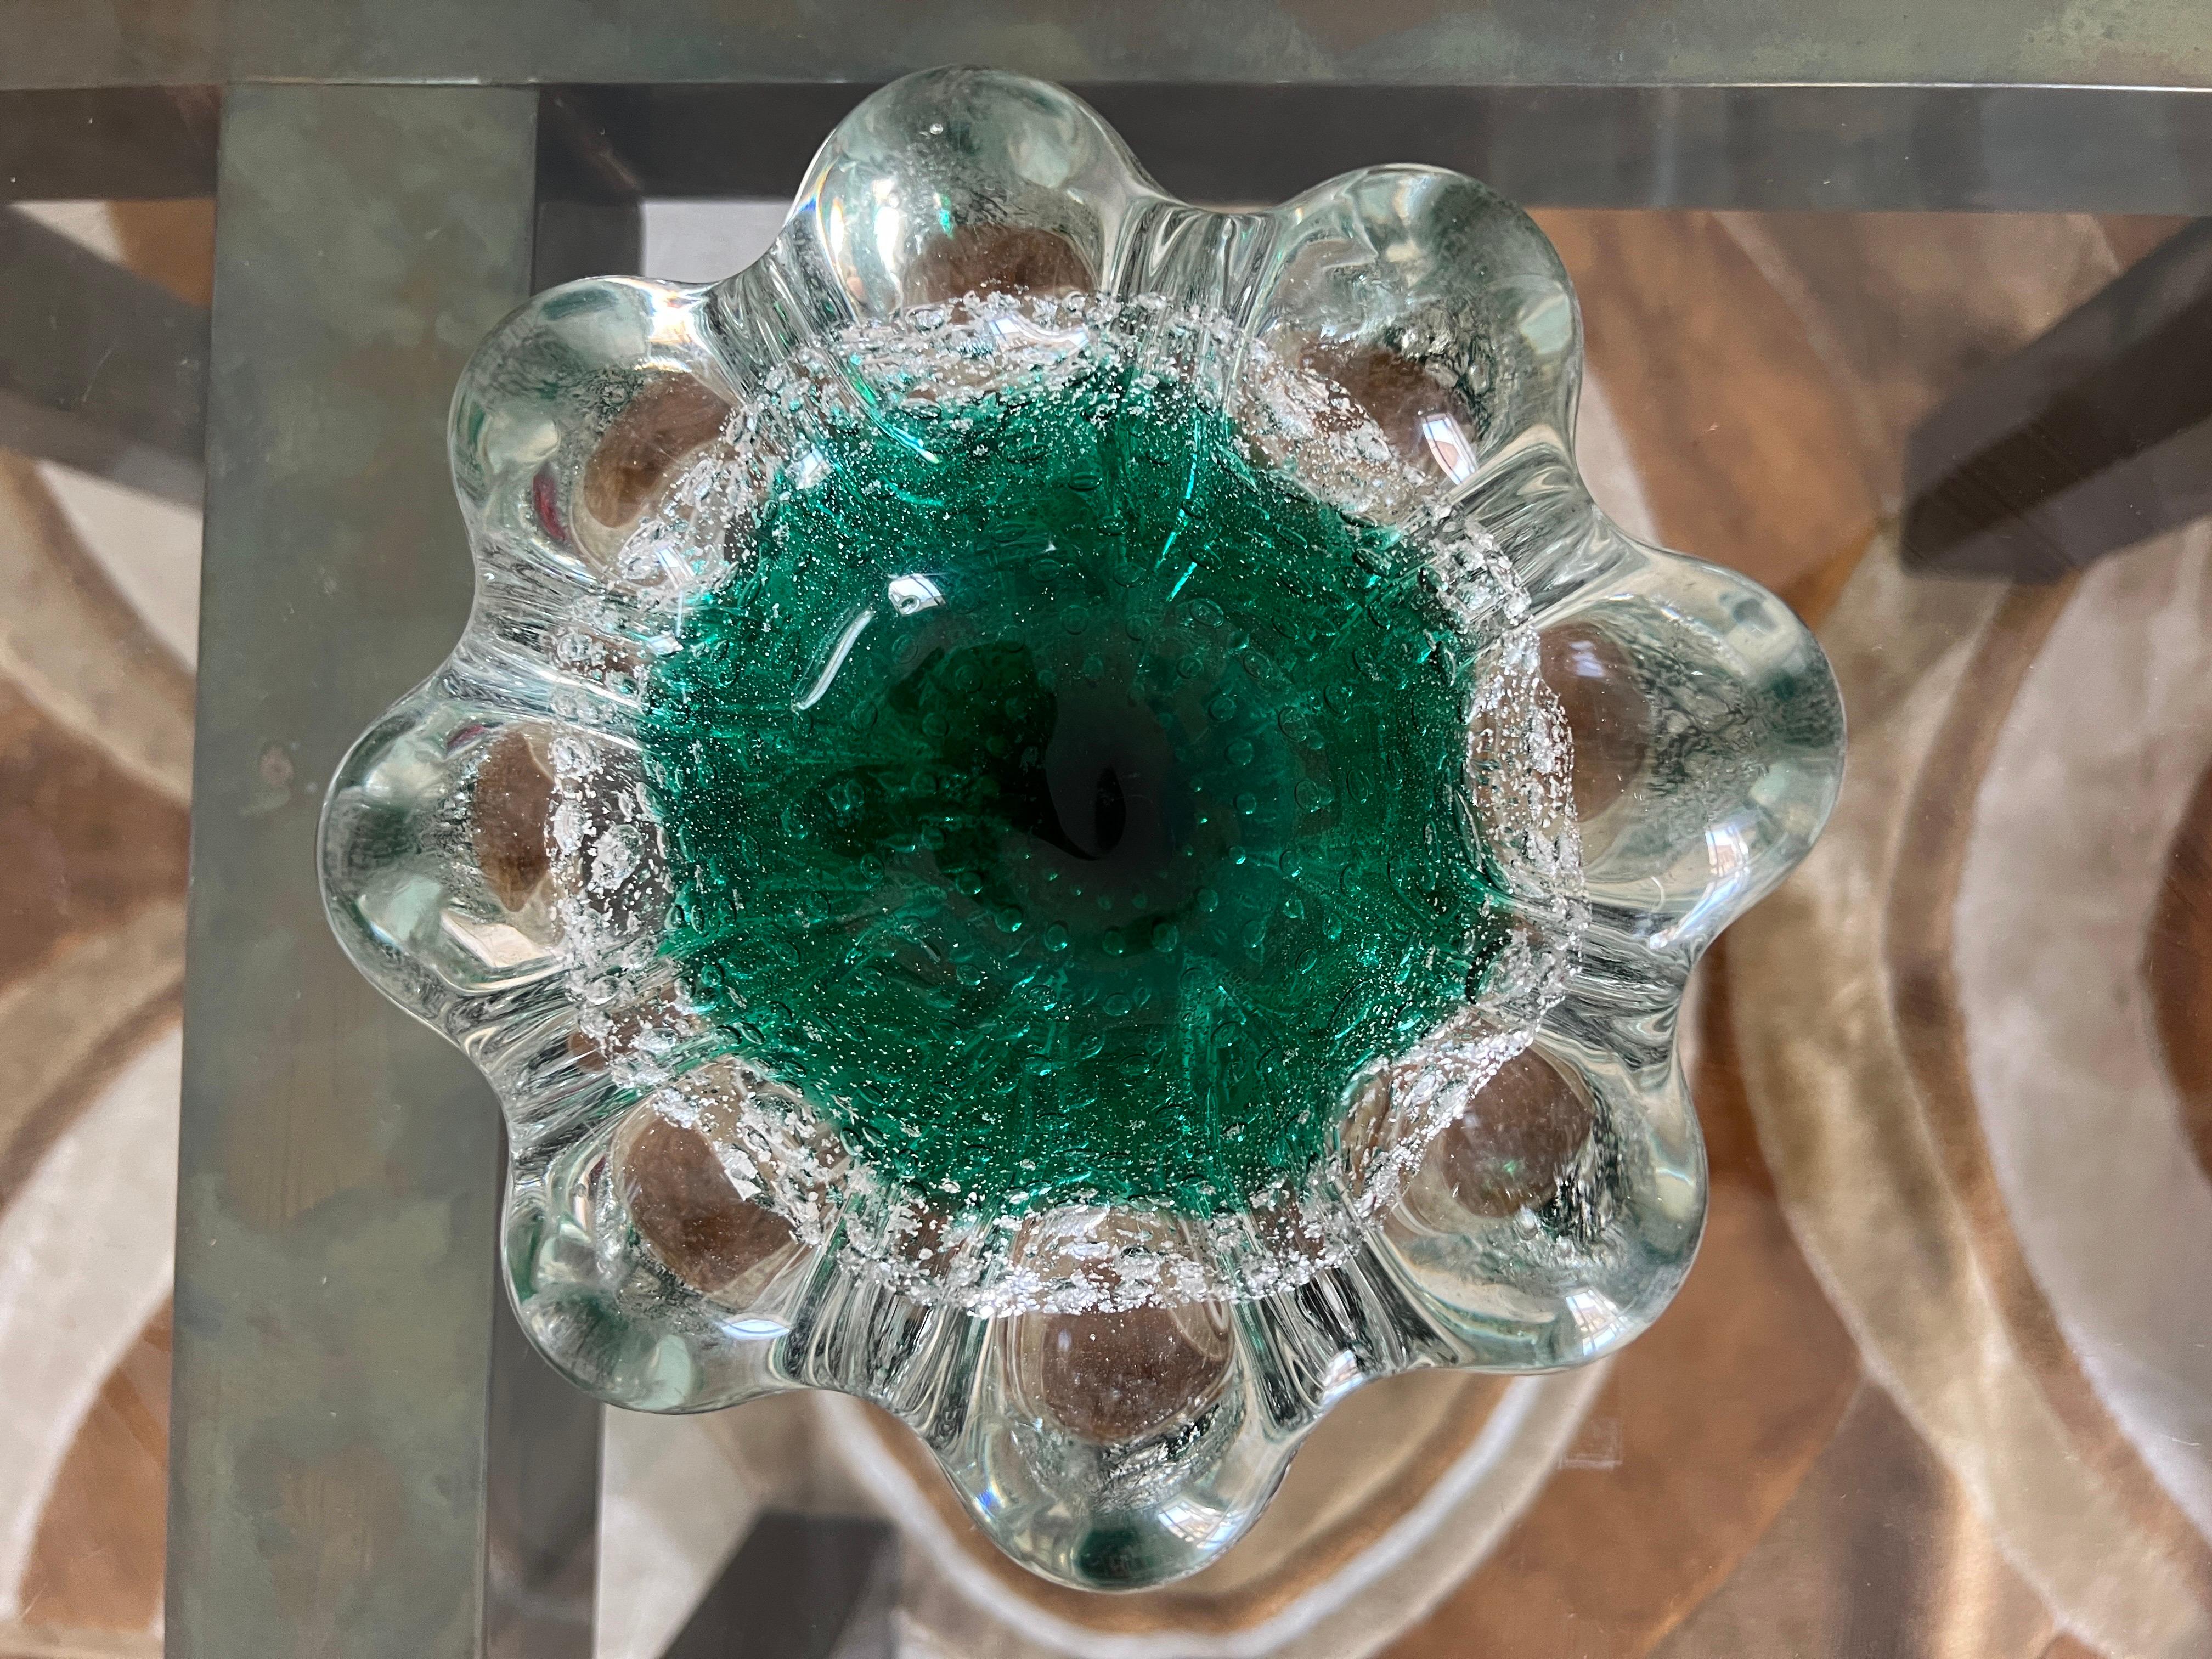 Voici une superbe pièce en verre de Murano par Seguso datant des années 1970 - un bol ou un cendrier mettant en valeur le savoir-faire renommé des artisans de Seguso. Cette pièce exquise est composée d'un mélange de verre transparent et vert